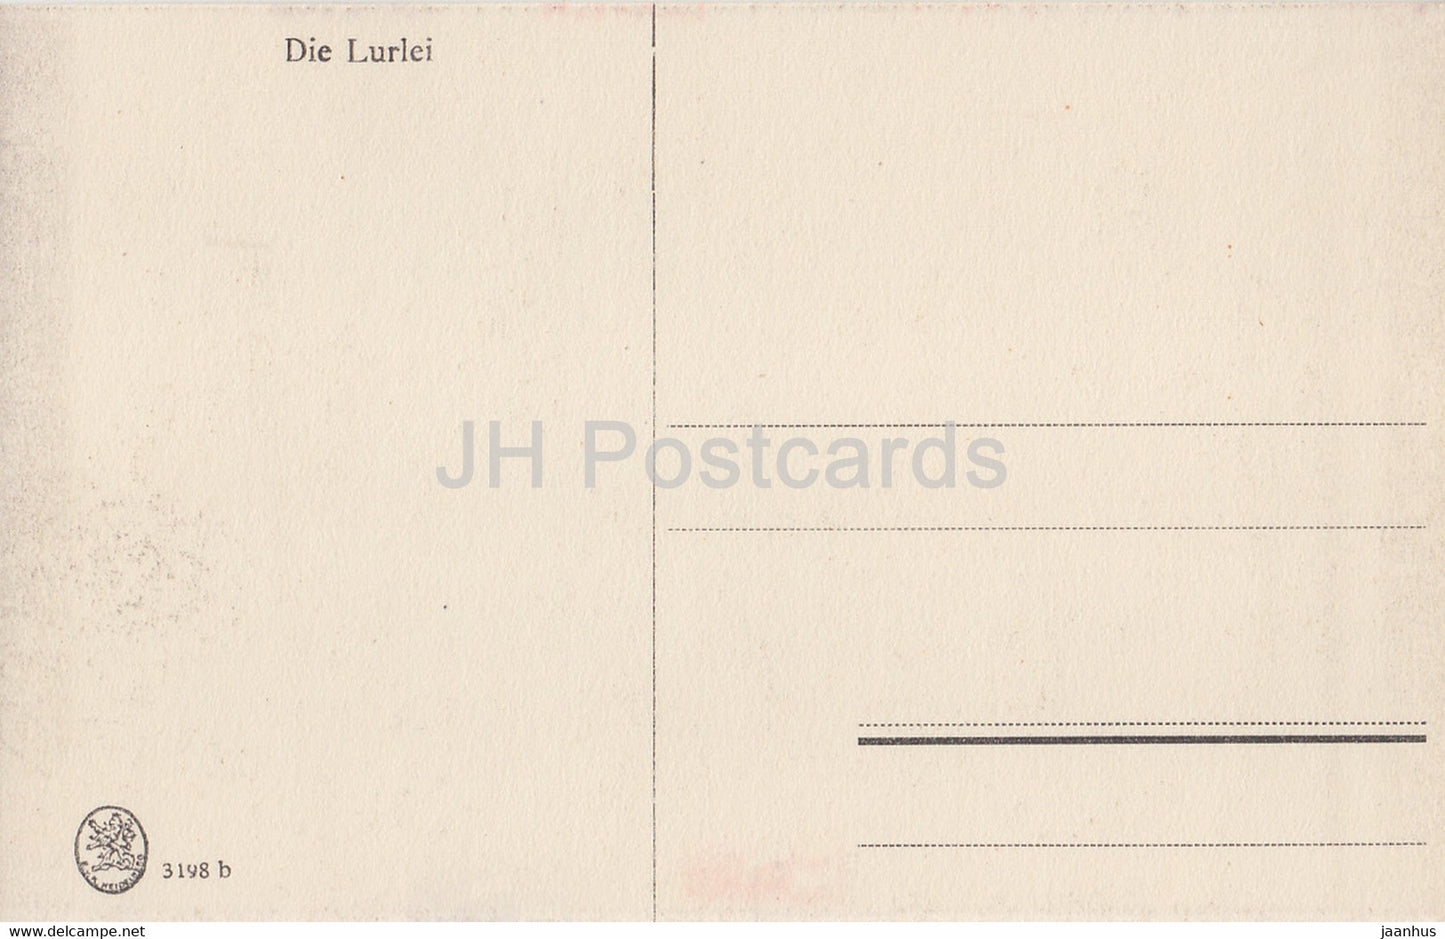 Die Lurlei - ship - steamer - 3198 - old postcard - Germany - unused